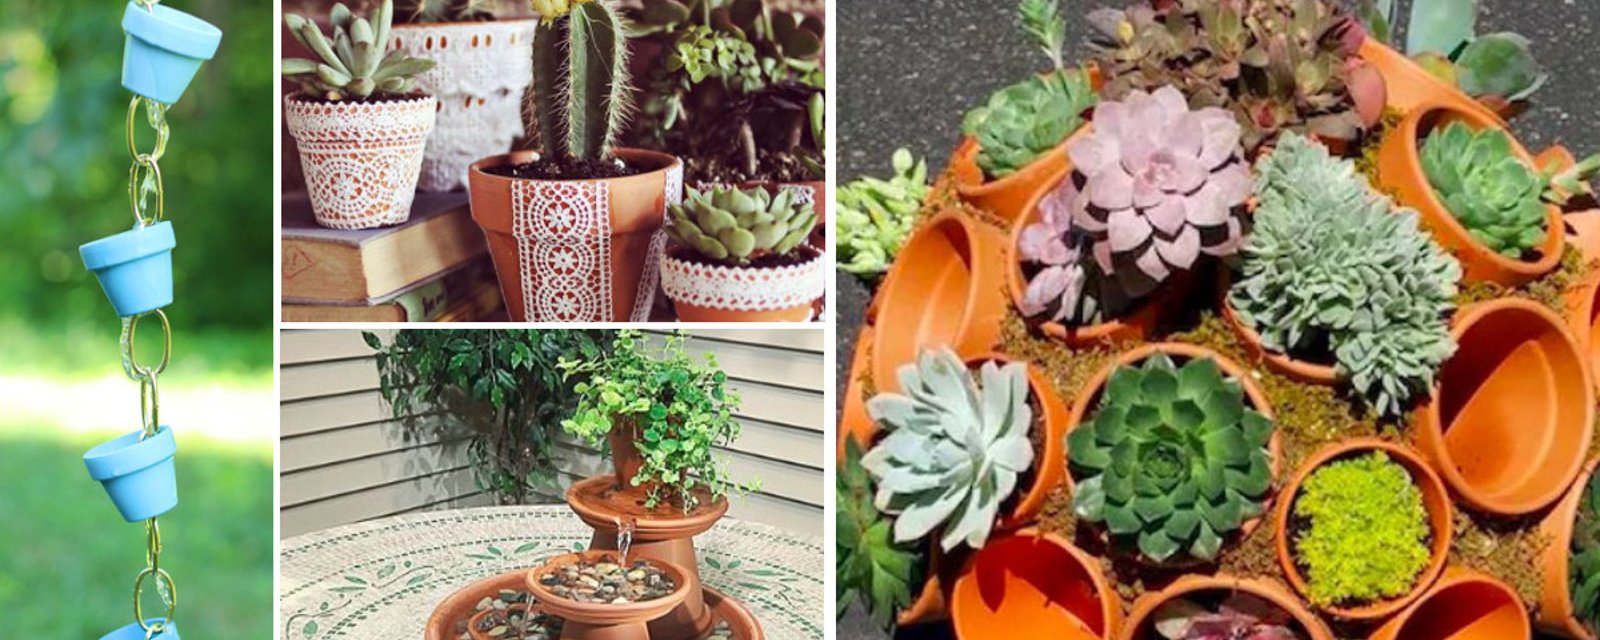 12 idées pour réutiliser les pots en terre cuite dans la maison et dans le jardin 